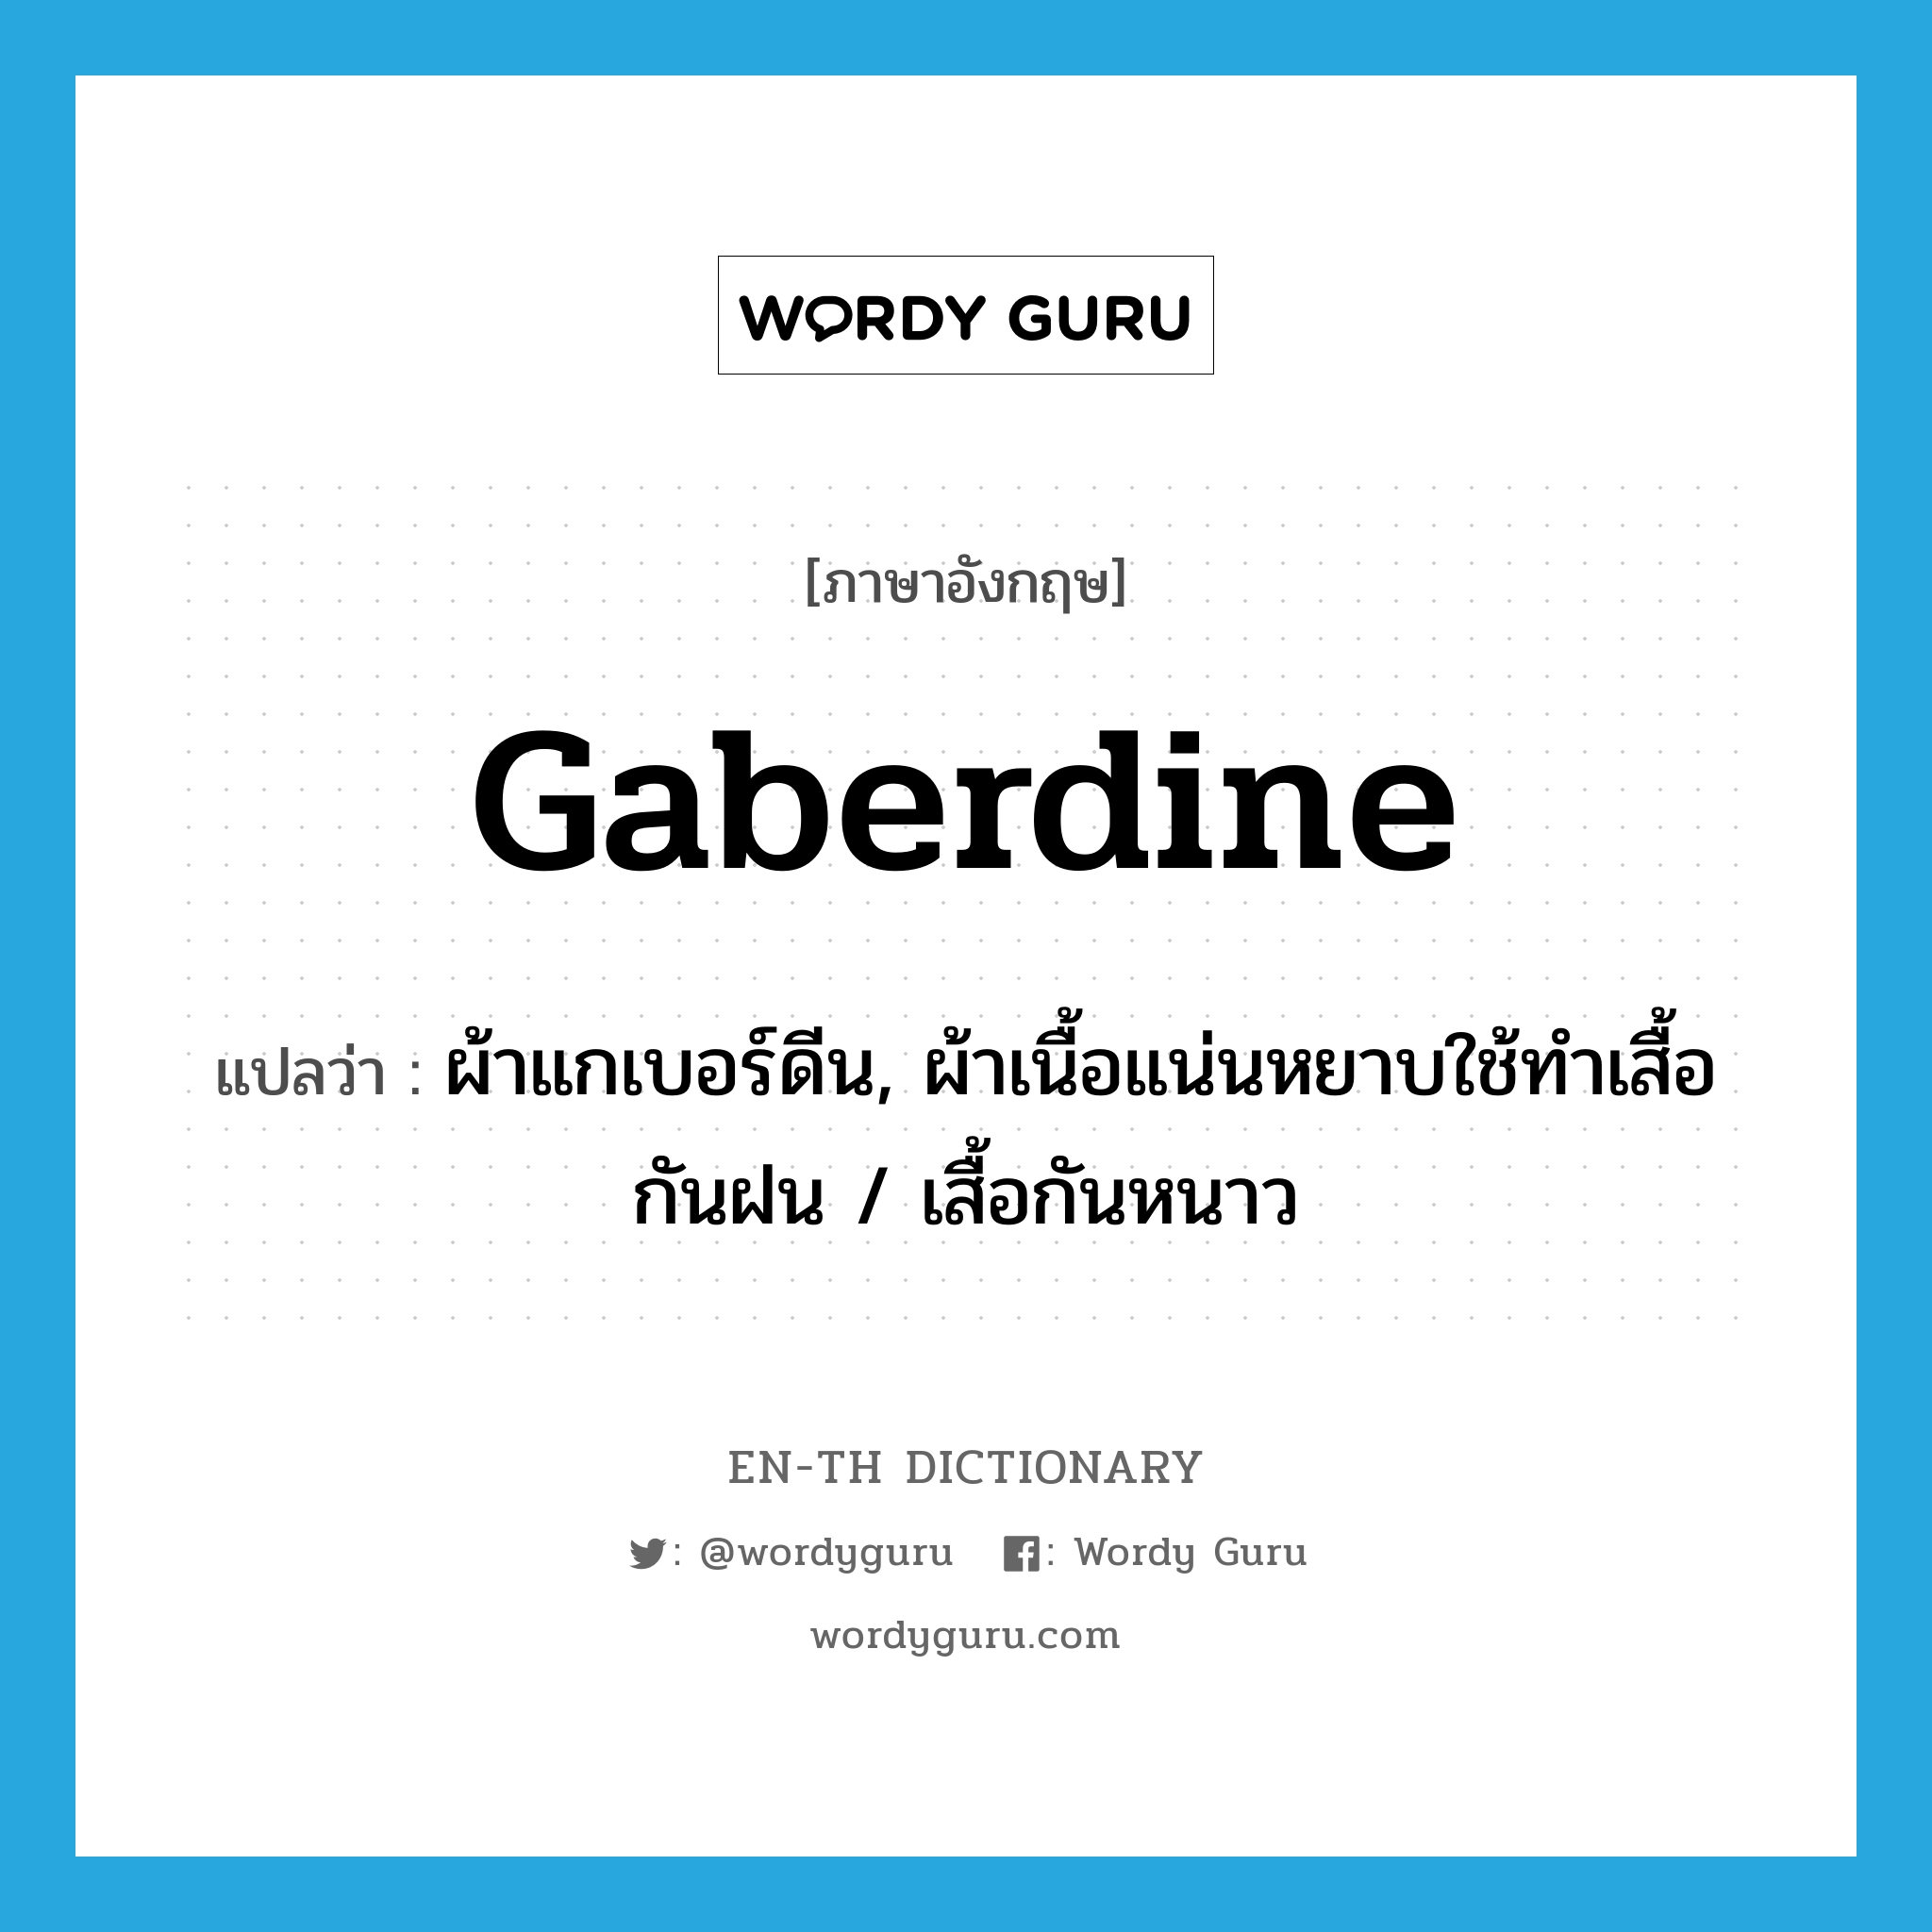 gaberdine แปลว่า?, คำศัพท์ภาษาอังกฤษ gaberdine แปลว่า ผ้าแกเบอร์ดีน, ผ้าเนื้อแน่นหยาบใช้ทำเสื้อกันฝน / เสื้อกันหนาว ประเภท N หมวด N